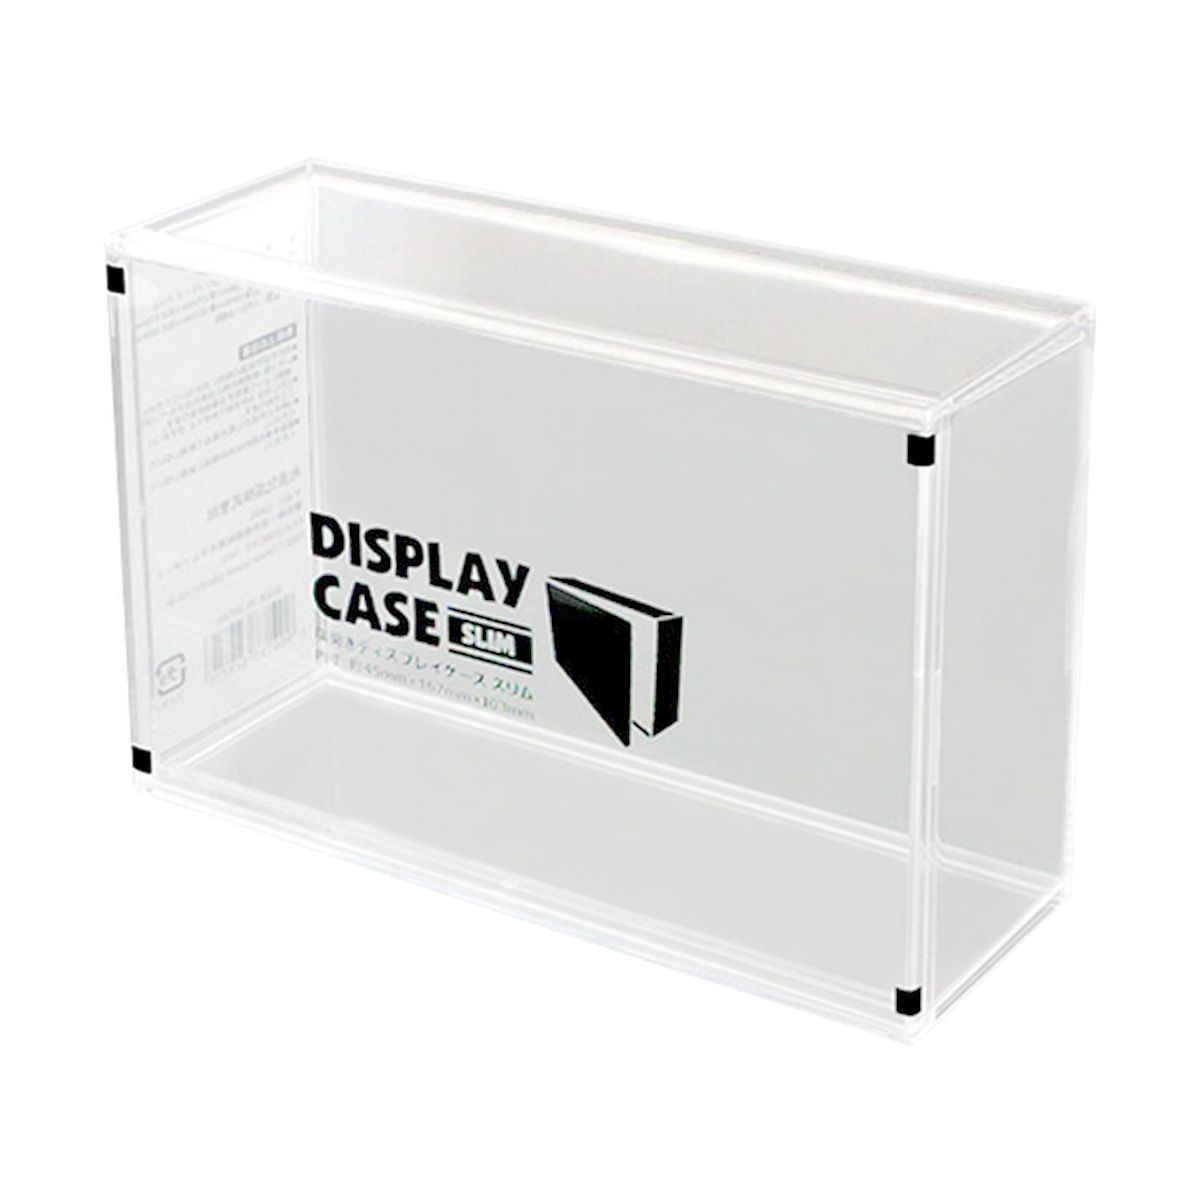 コレクションボックス 透明ボックス 横開きディスプレイケース スリム 